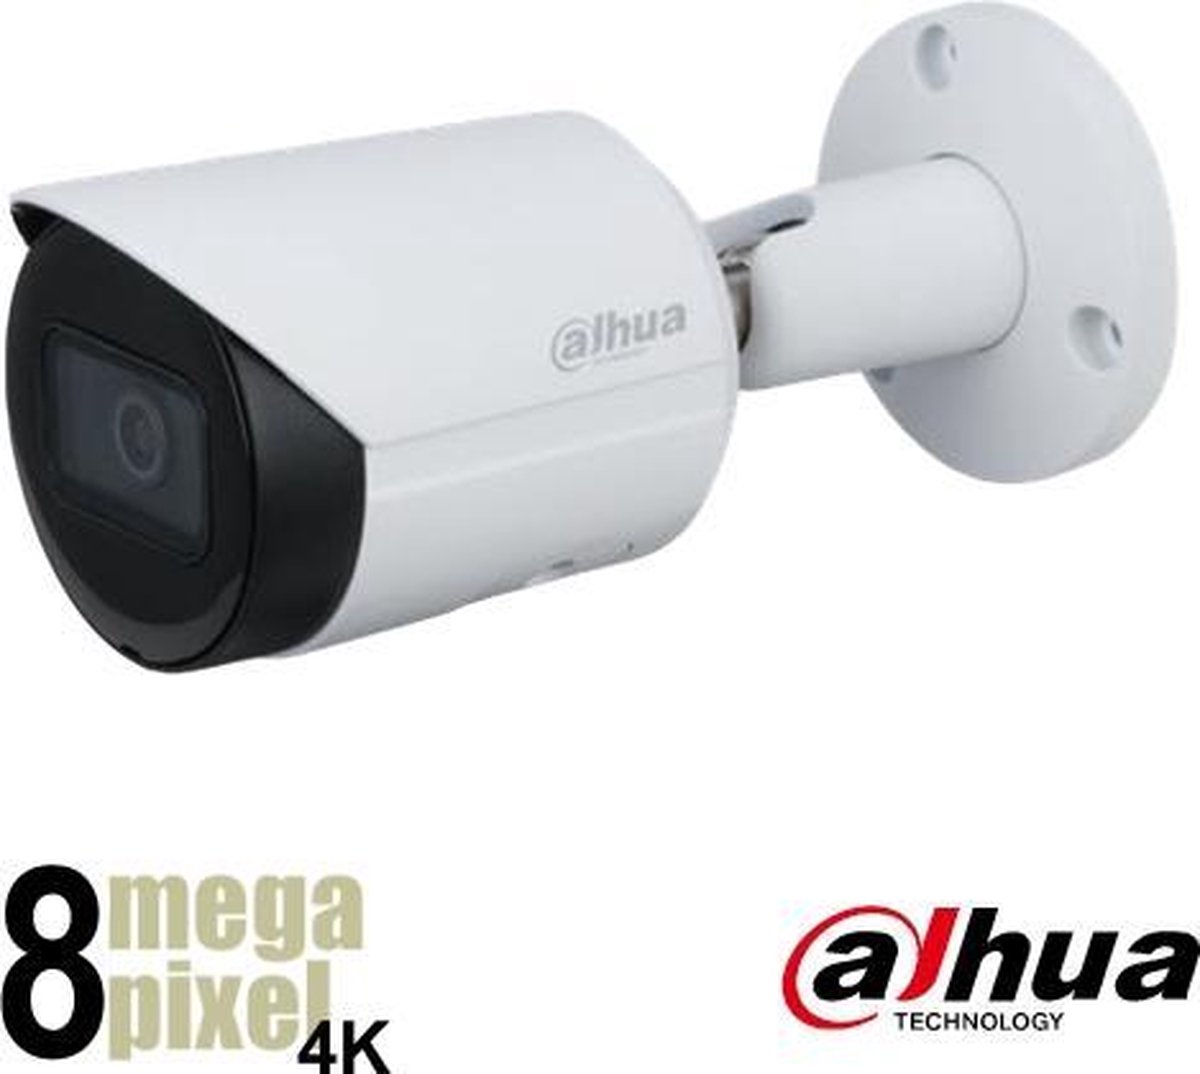 Dahua 4K IP bullet camera - 2.8mm lens - Starlight - SD-kaart slot - D2831